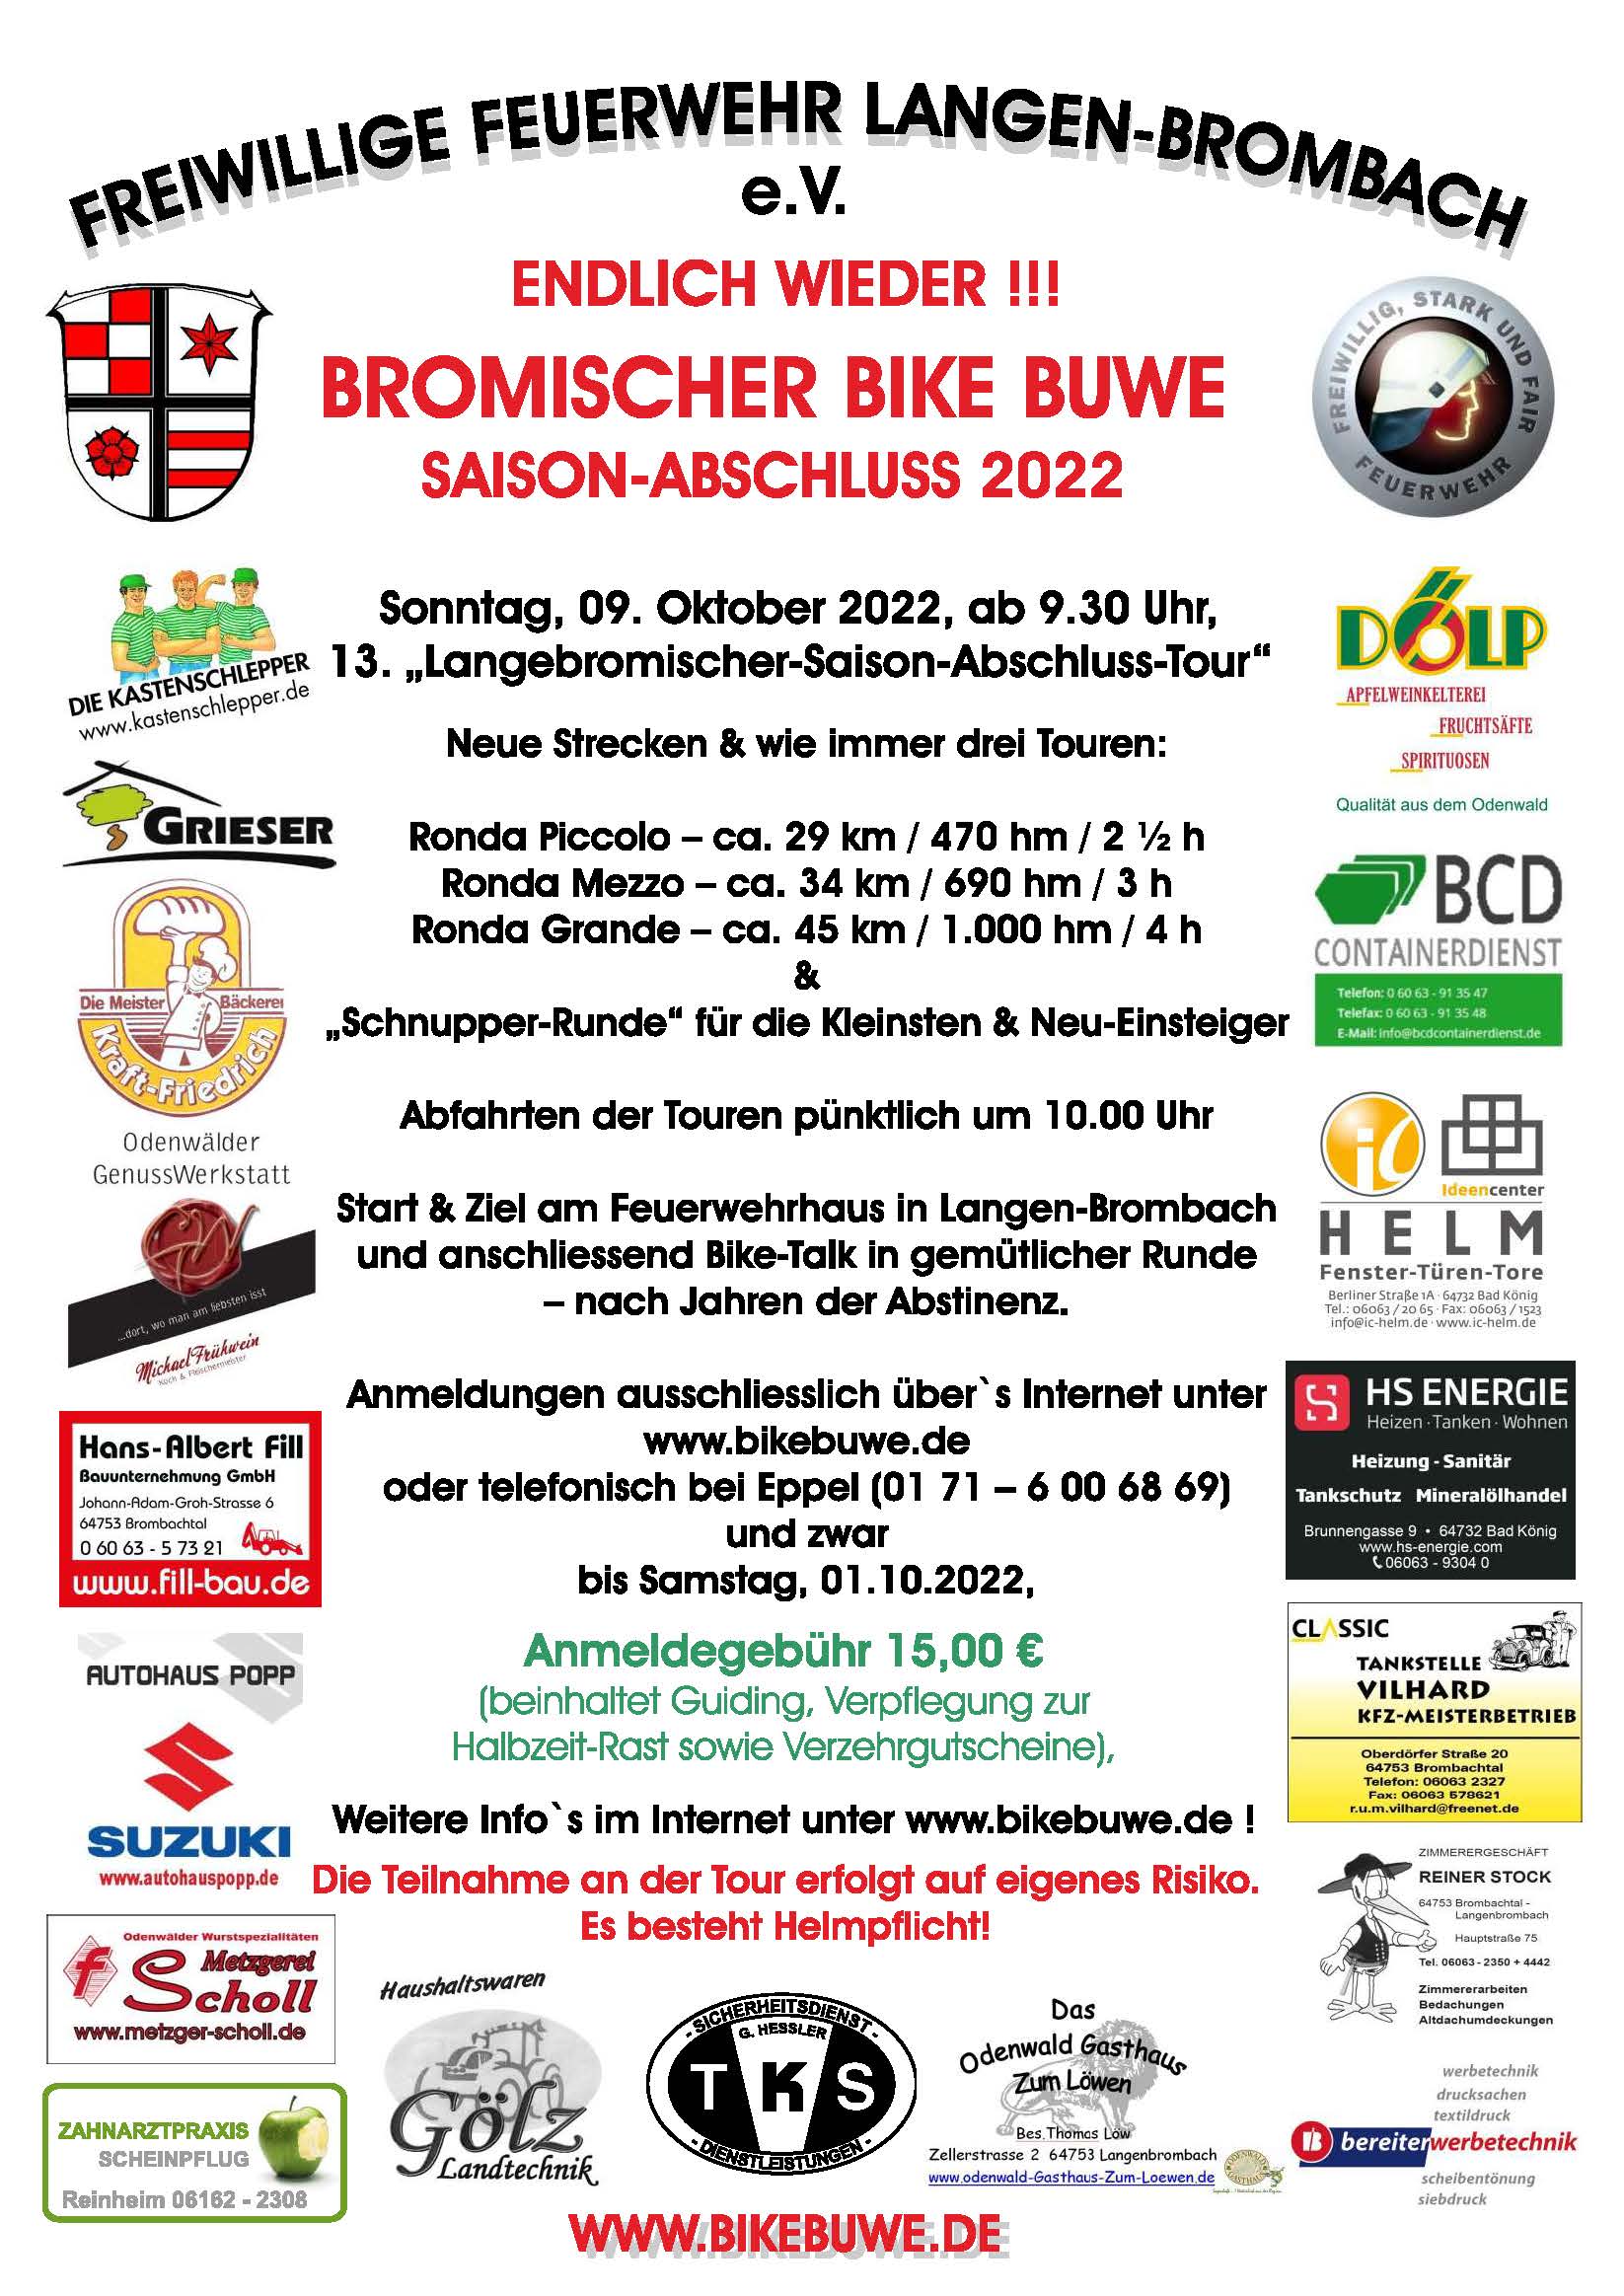 Es geht wieder los: Saison-Abschluss der Bromischer Bike Buwe geht in die 14. Runde!